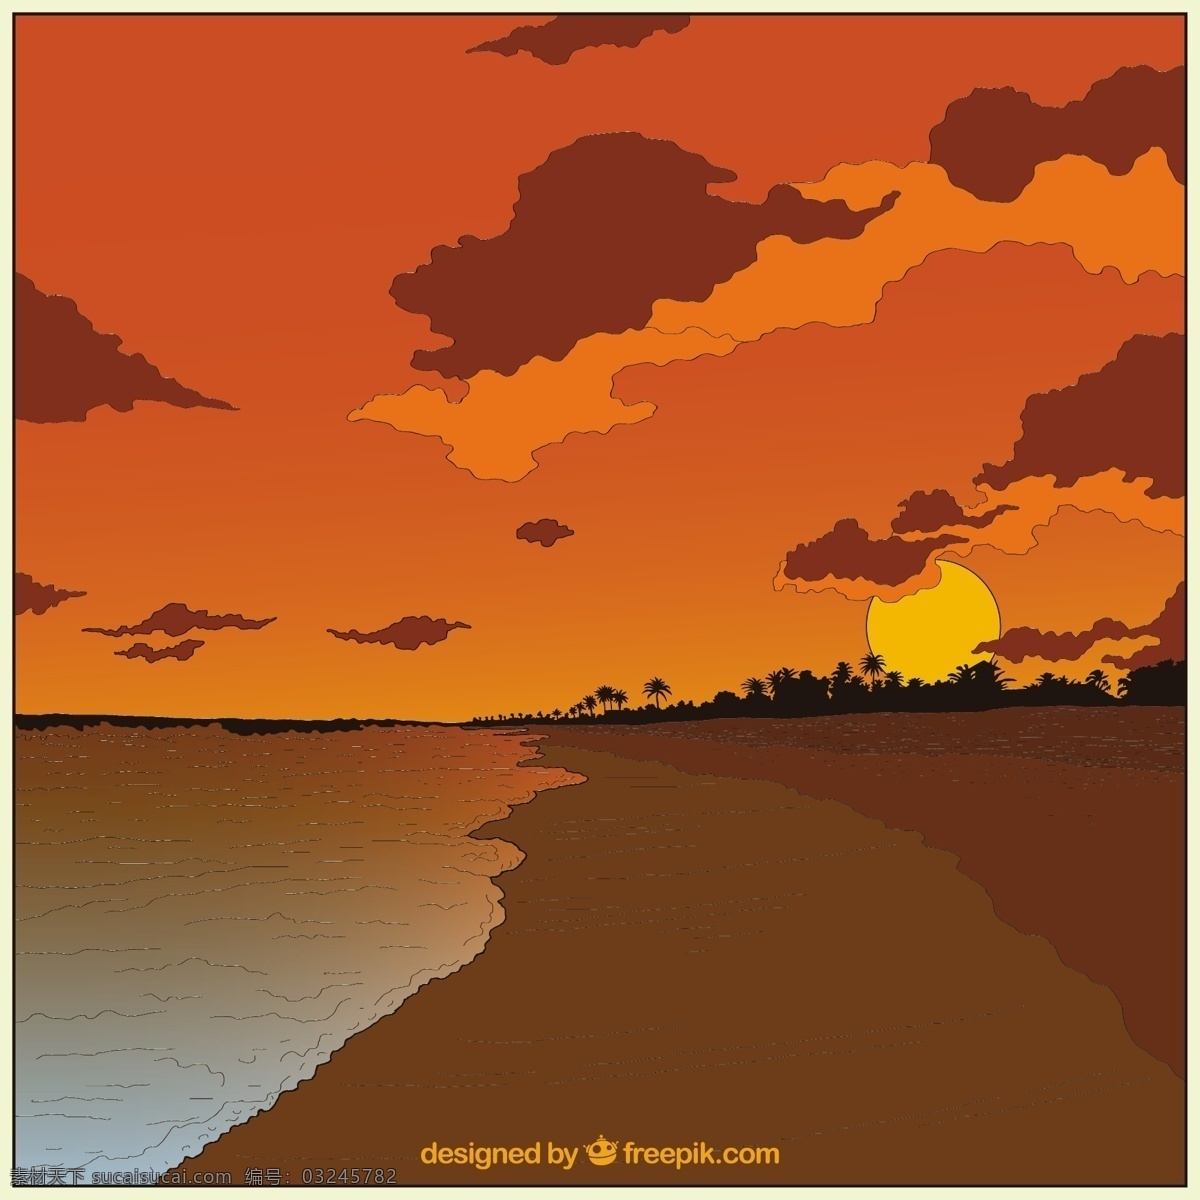 矢量 黄昏 沙滩 风景 自然风景 矢量风景 矢量沙滩 夕阳 云朵 自然